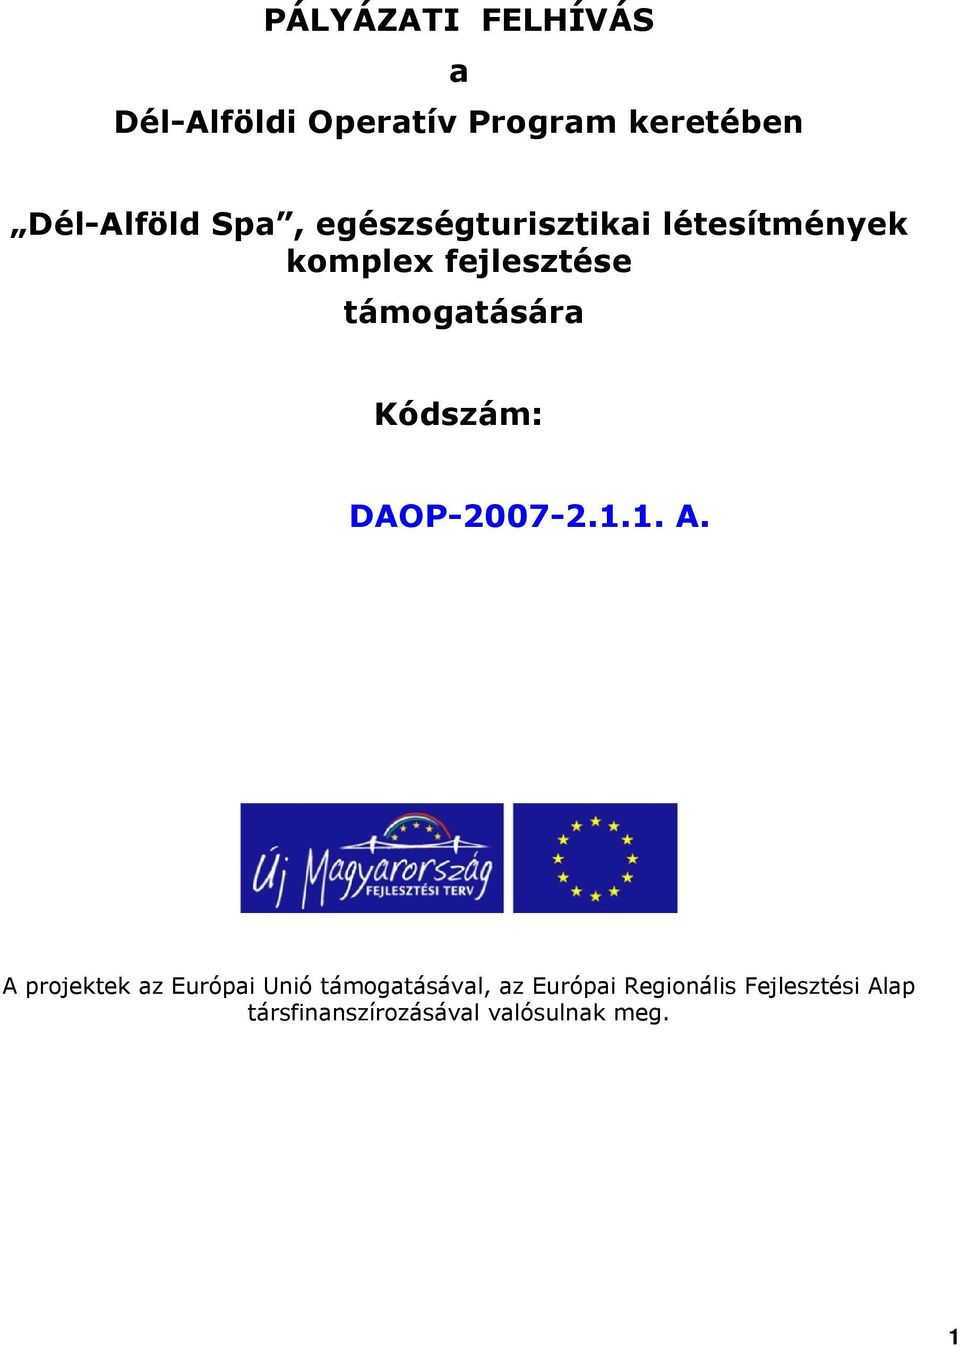 Kódszám: DAOP-2007-2.1.1. A.